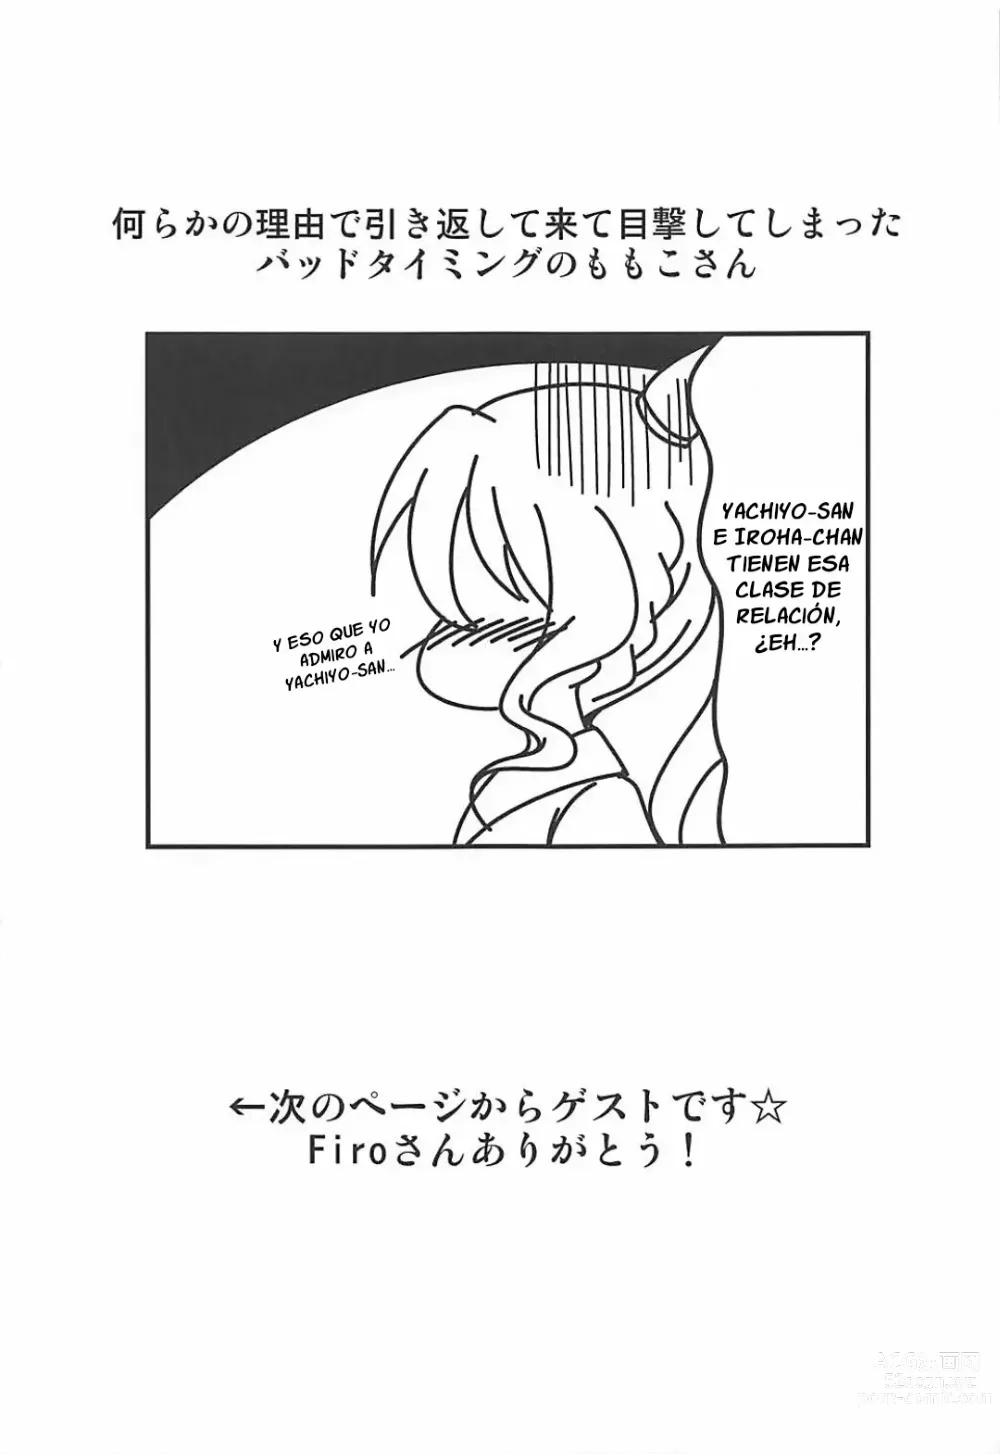 Page 18 of doujinshi Yachiyo File II